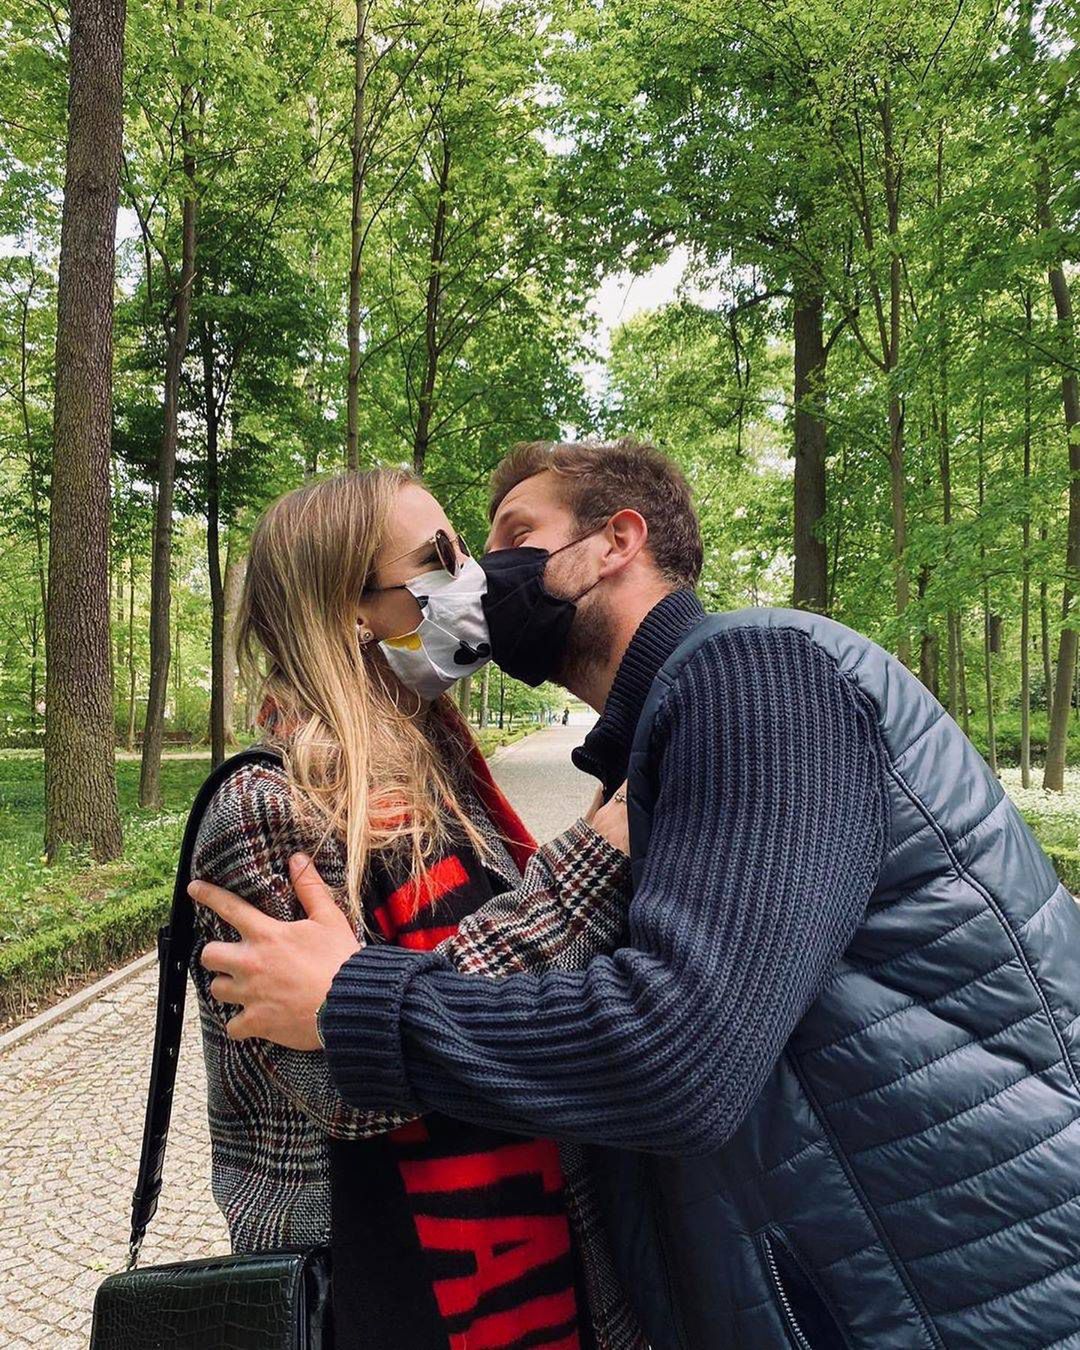 Antek Królikowski i Kasia Dąbrowska pocałunek w czasie zarazy